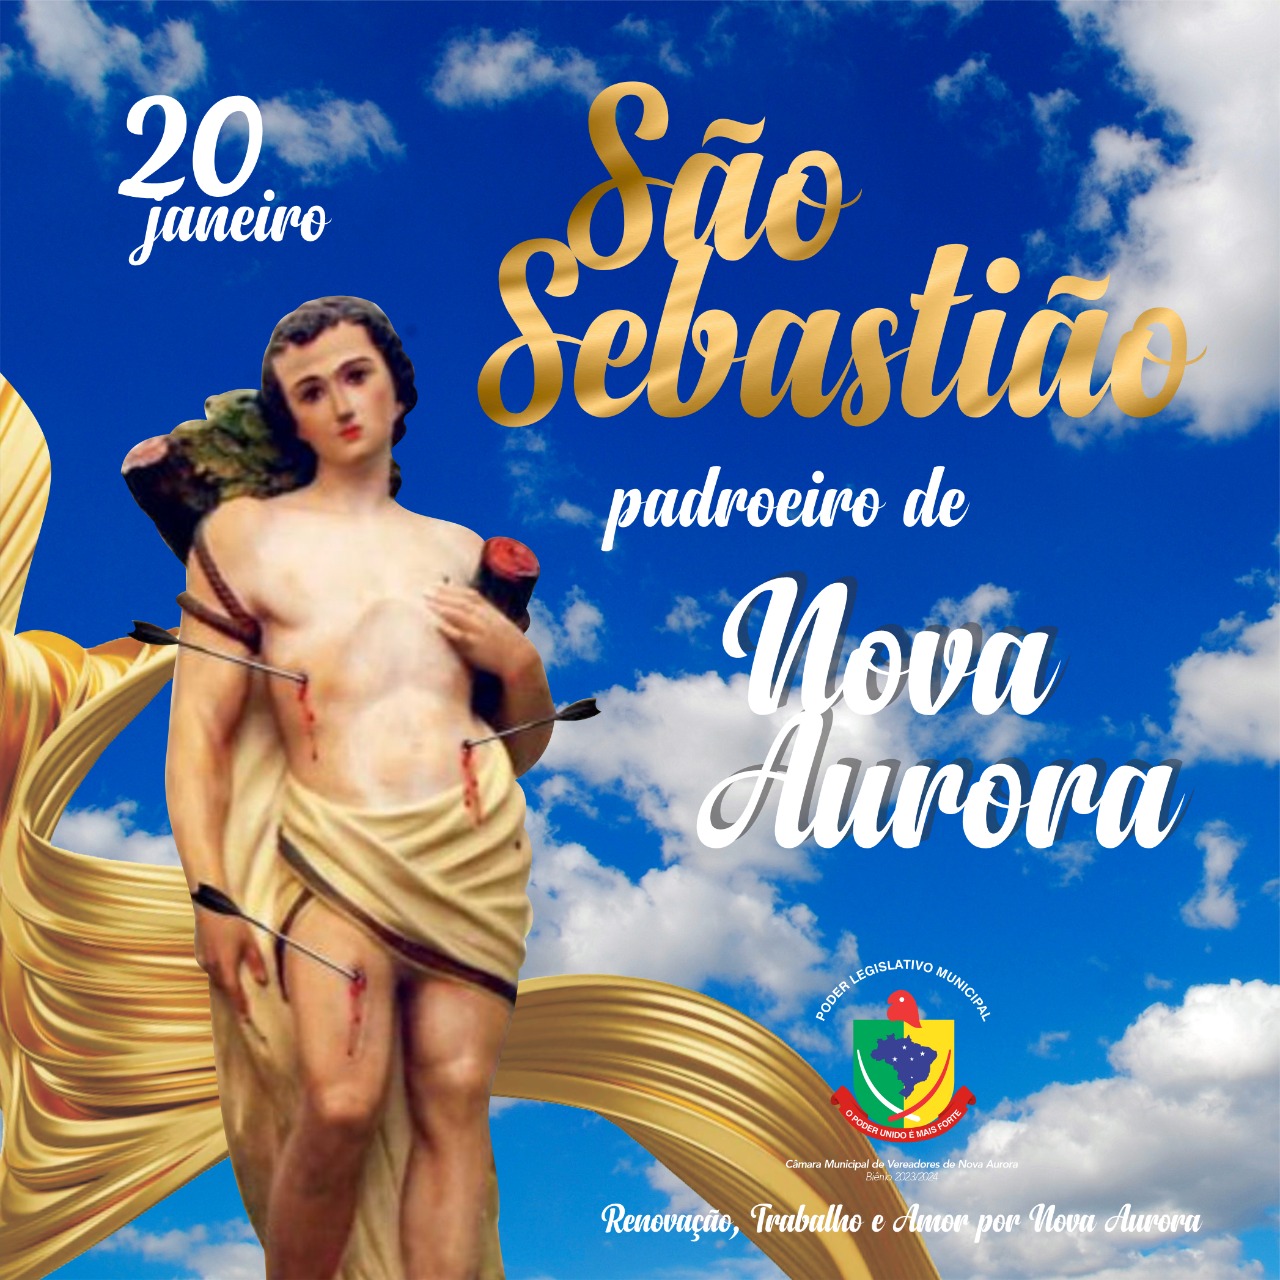 You are currently viewing São Sebastião Padroeiro de Nova Aurora